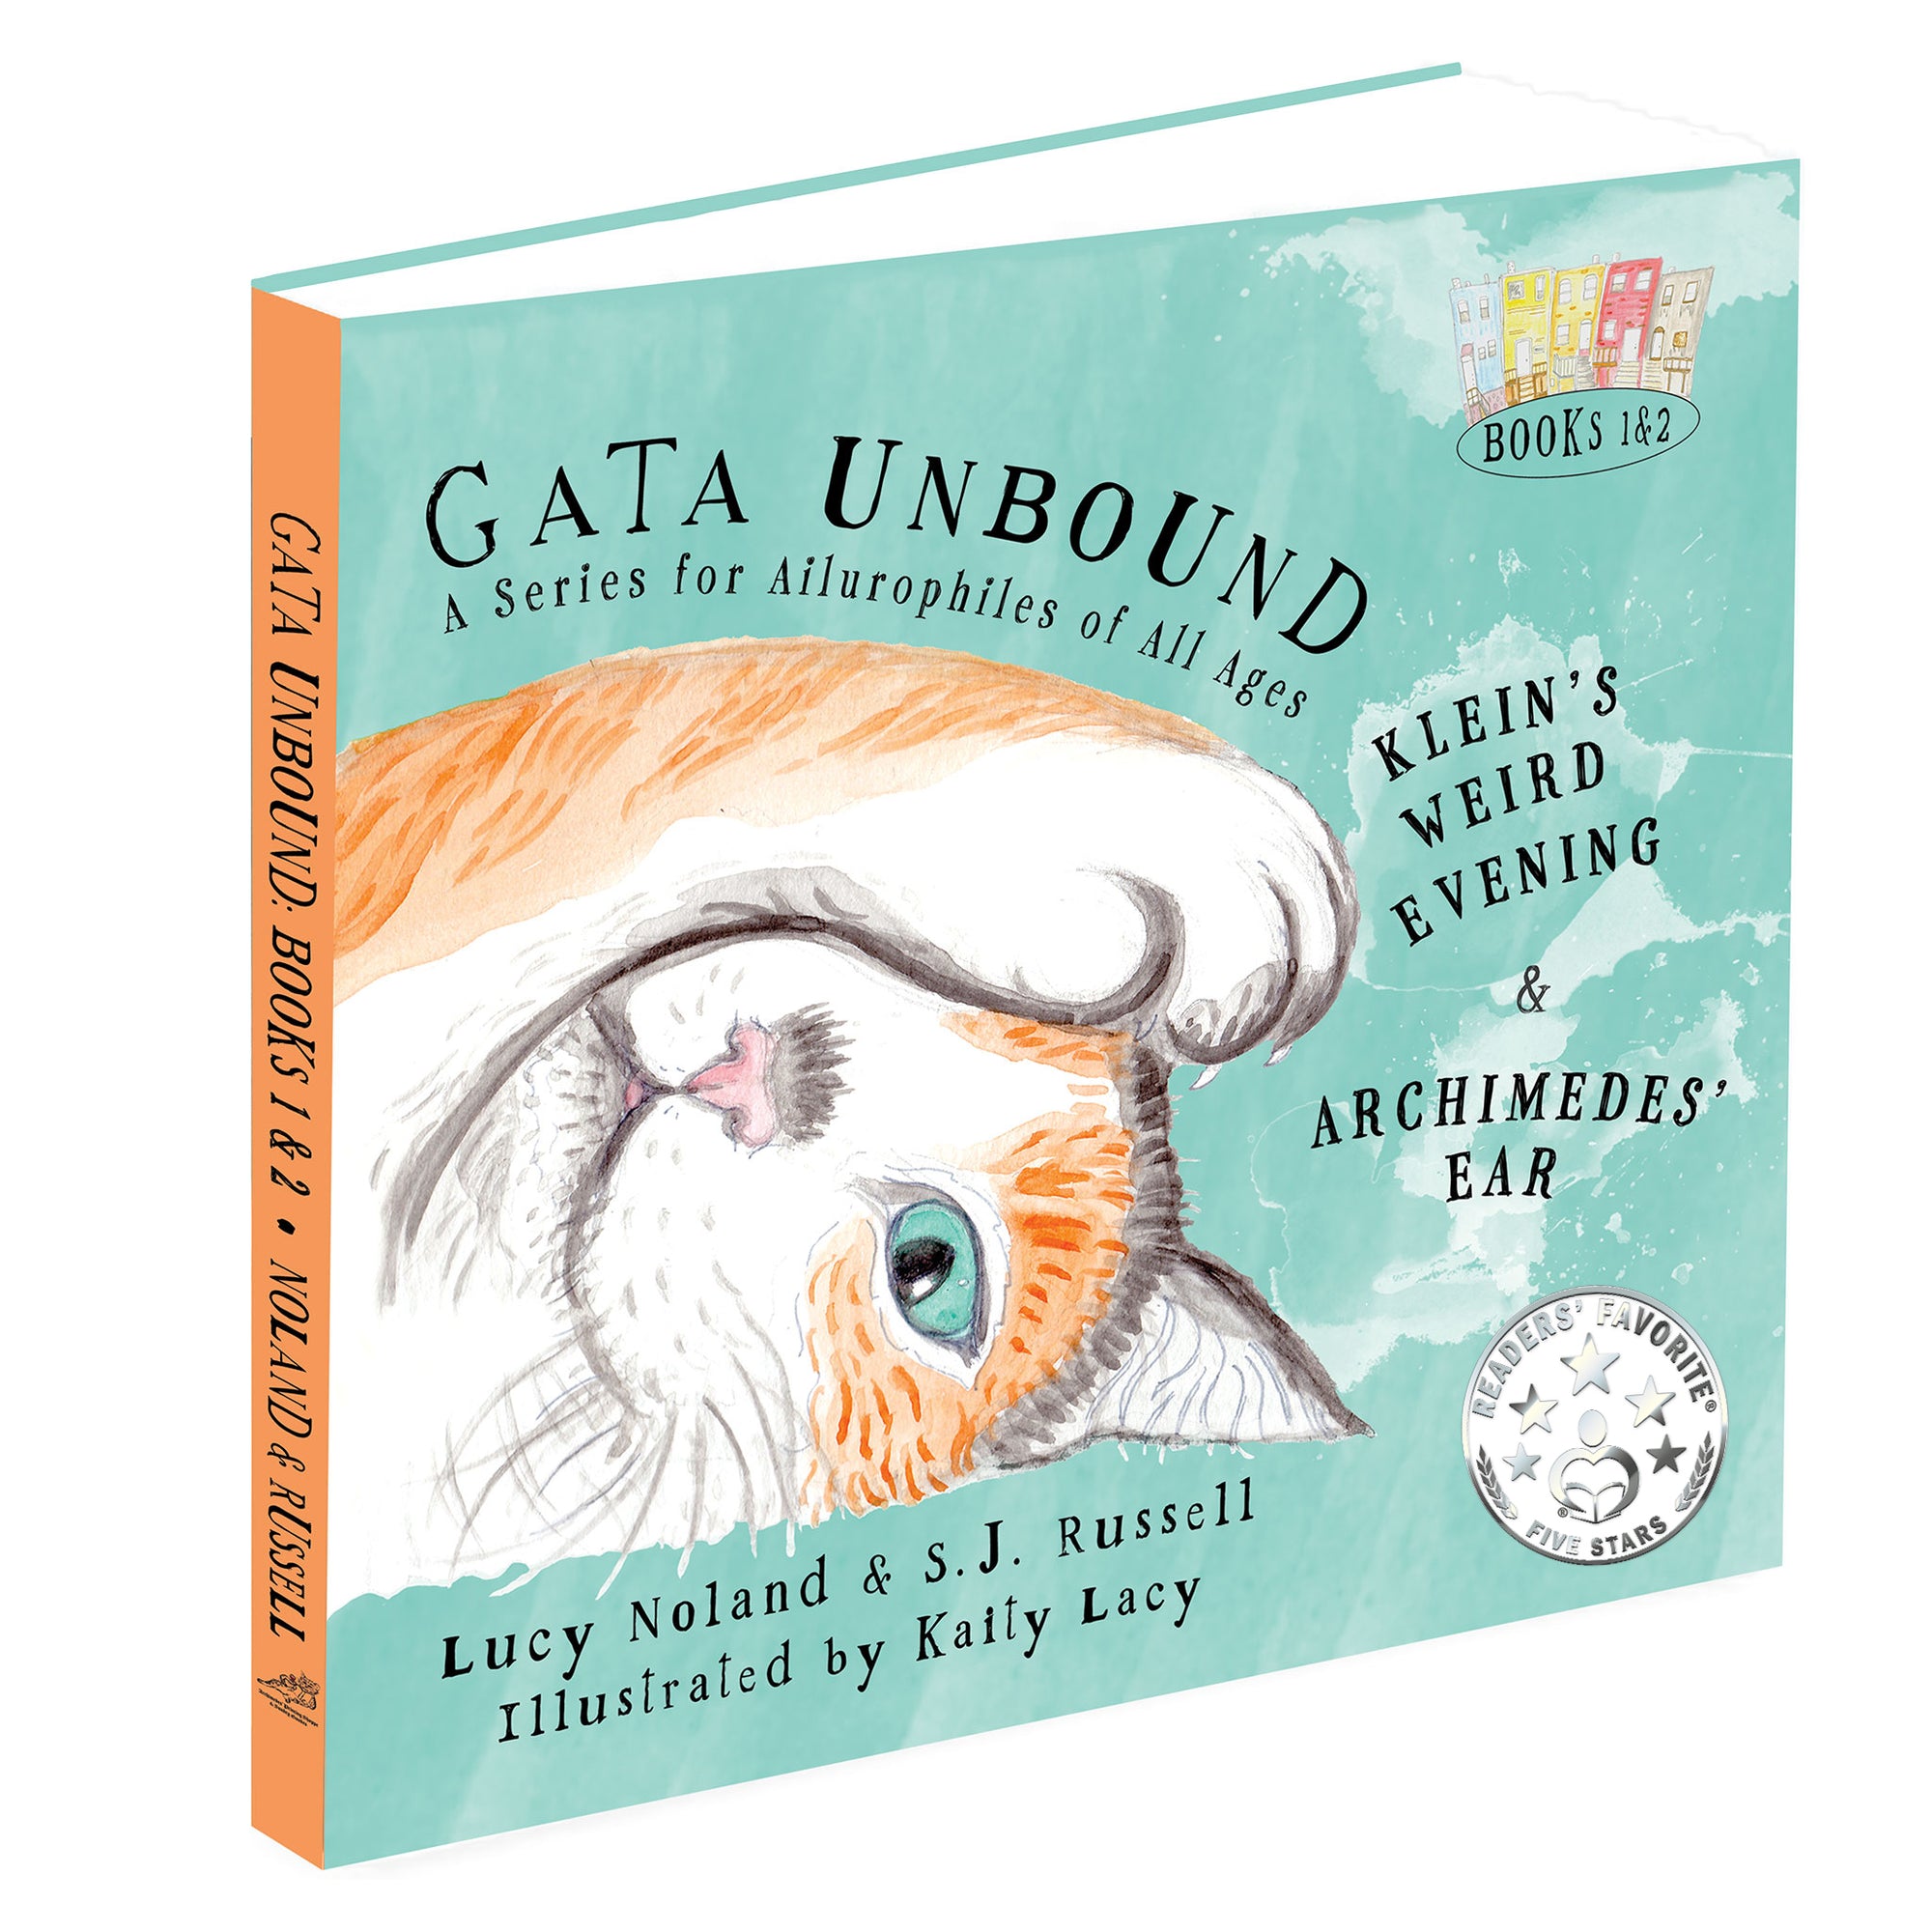 The Buzz about GATA UNBOUND Volume 1